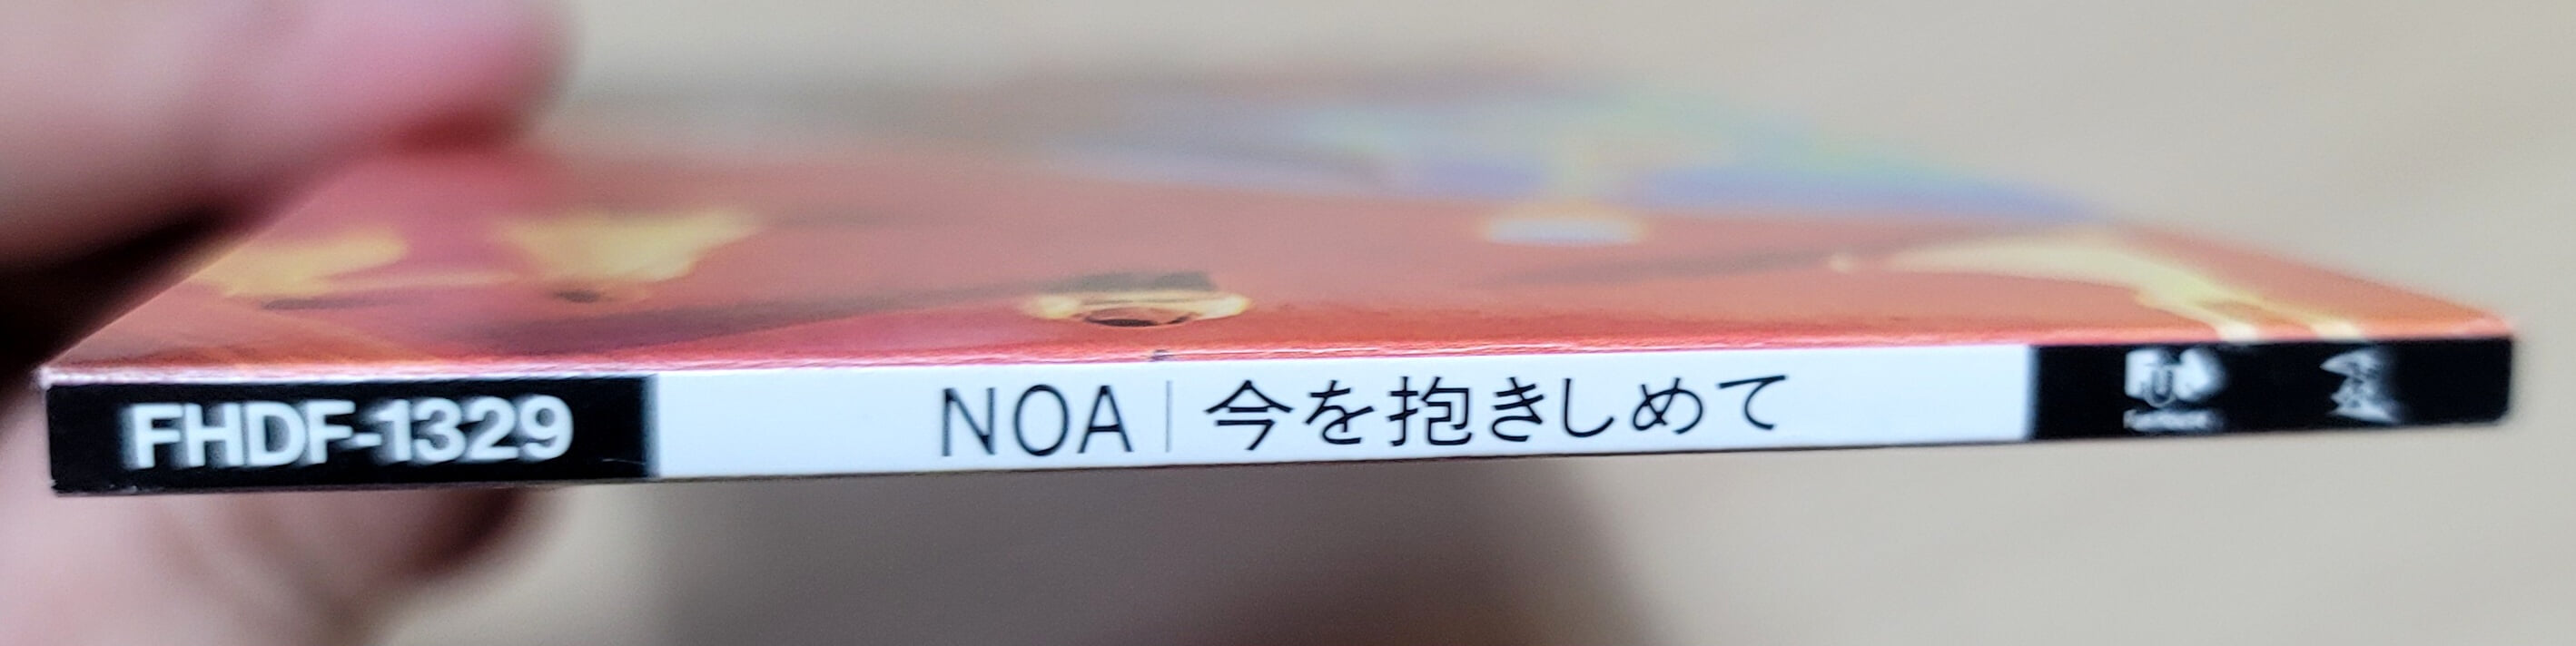 (일본반 8cm싱글) YOSHIKI (액스재팬 요시키) - (NOA) 今を抱きしめて